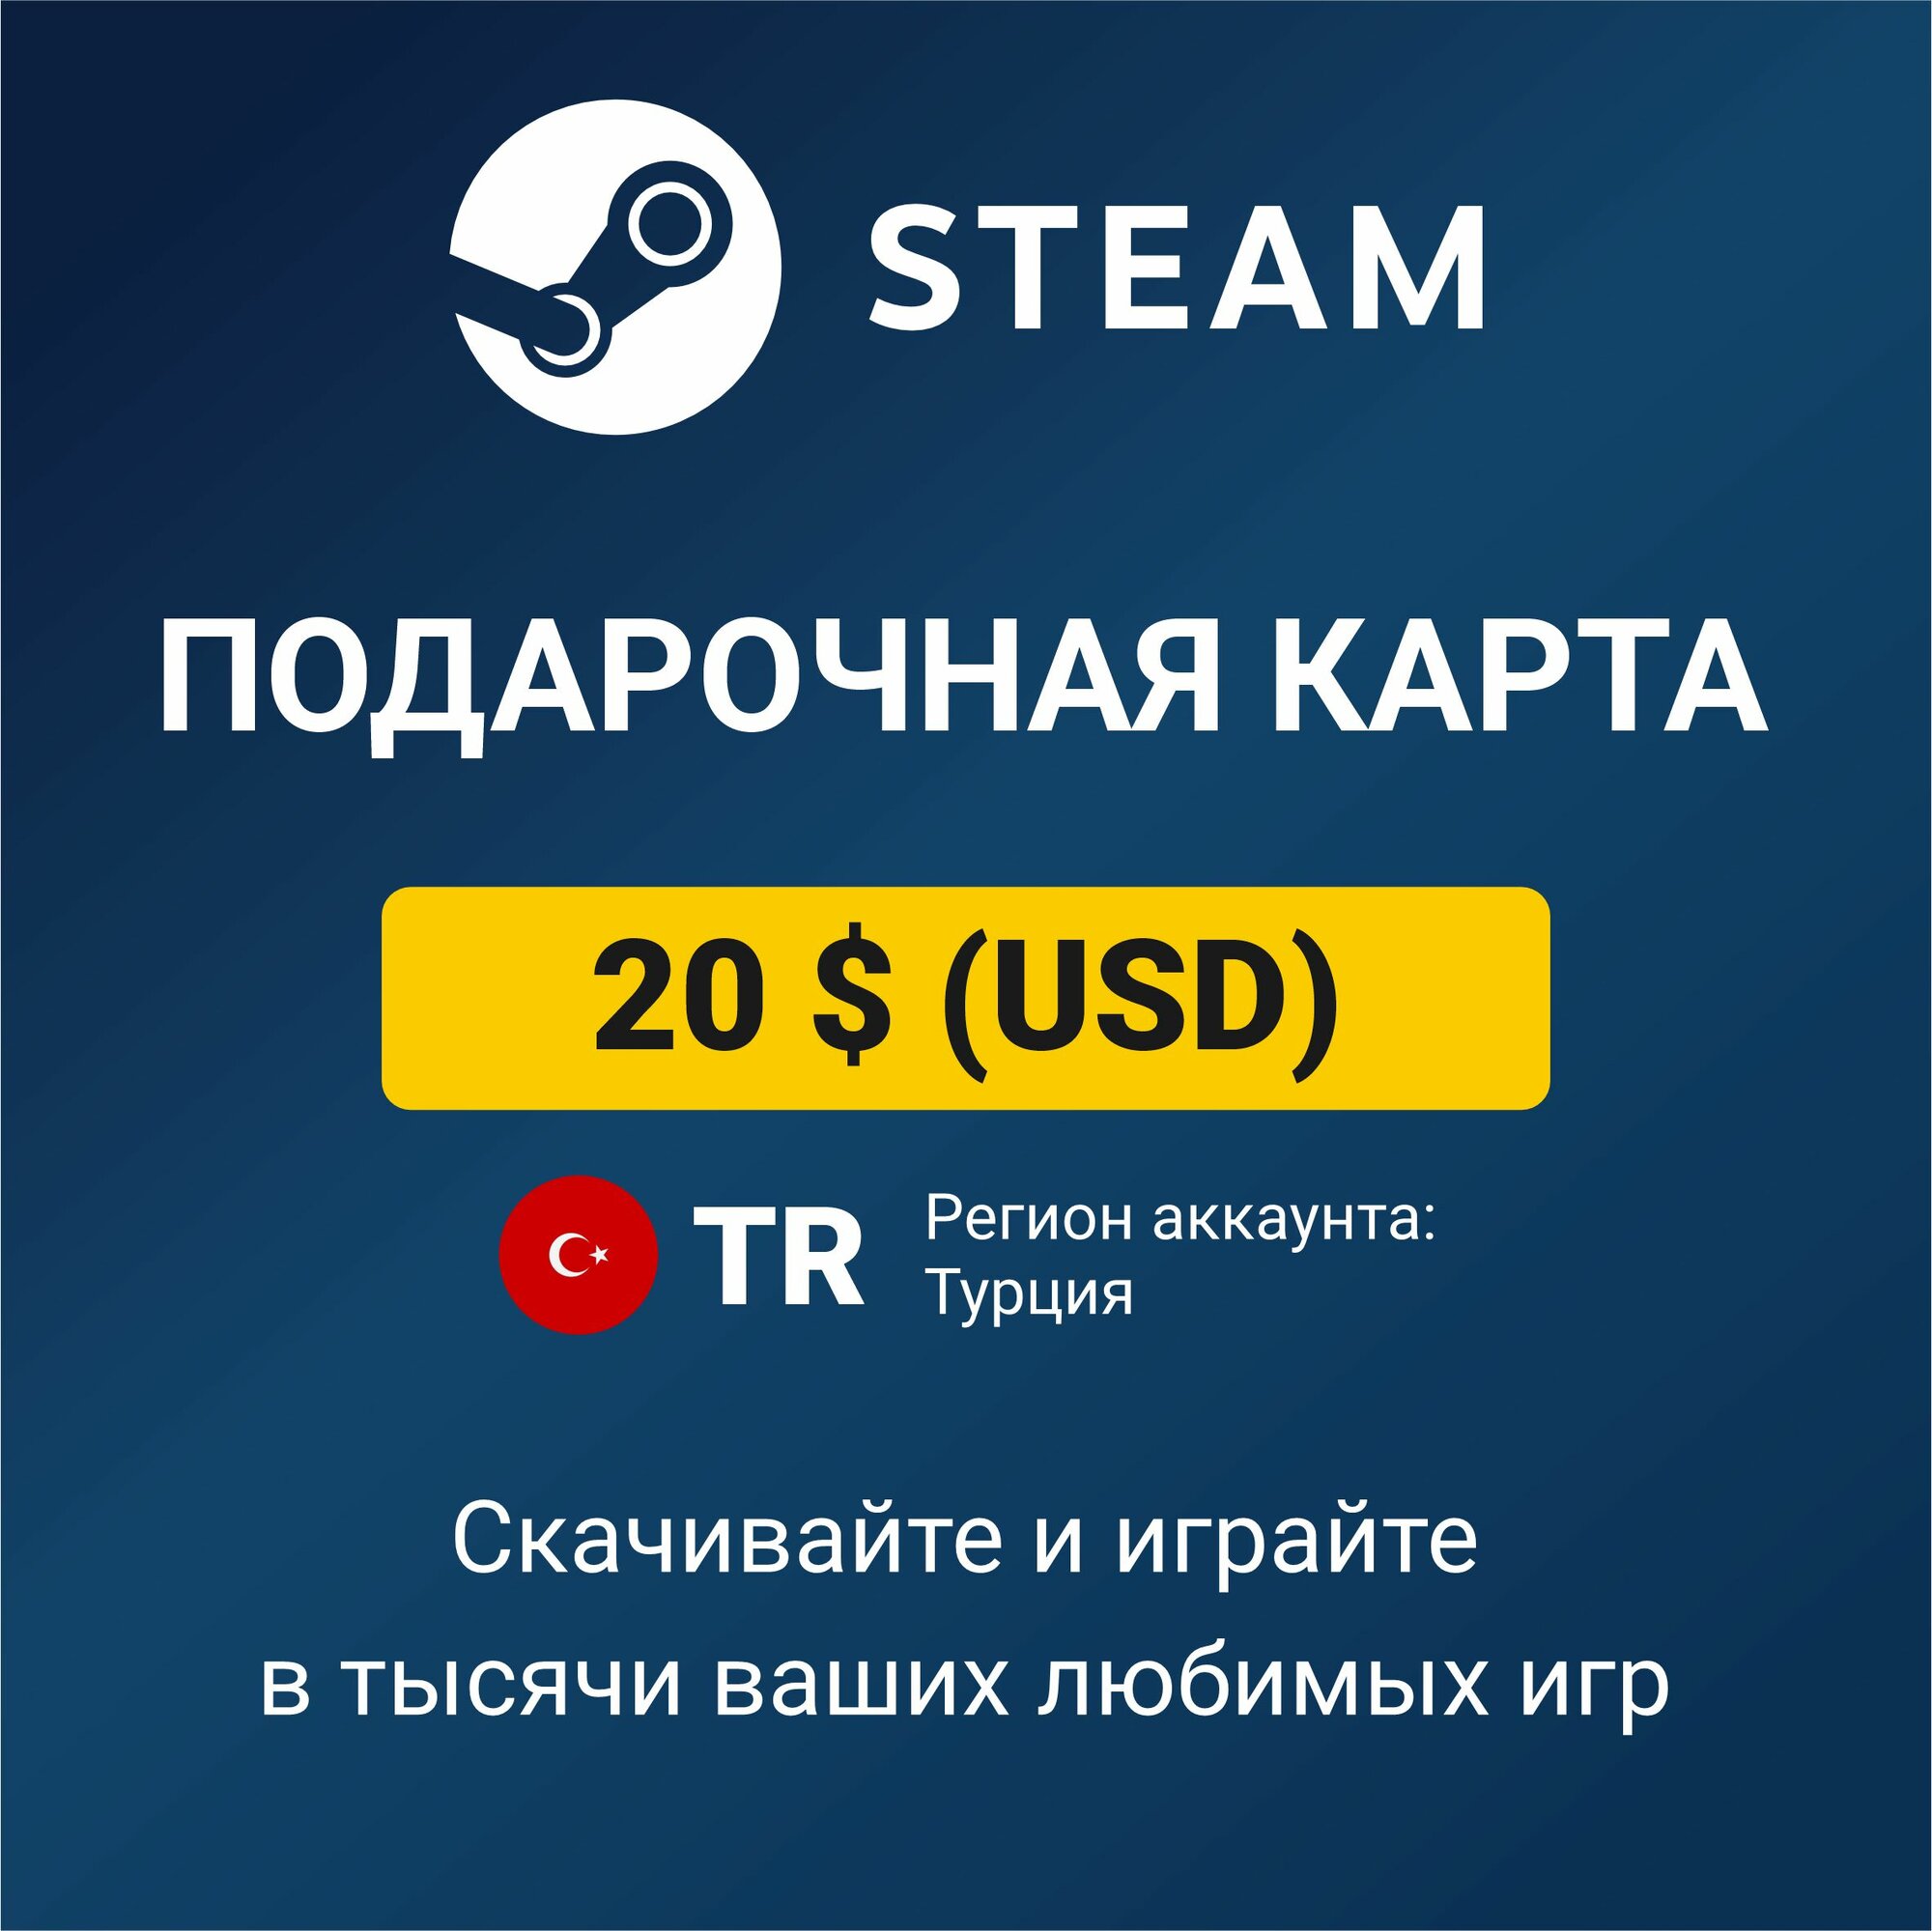 Пополнение кошелька Steam 20 USD (регион аккаунта: Турция), цифровой код активации/подарочная карта